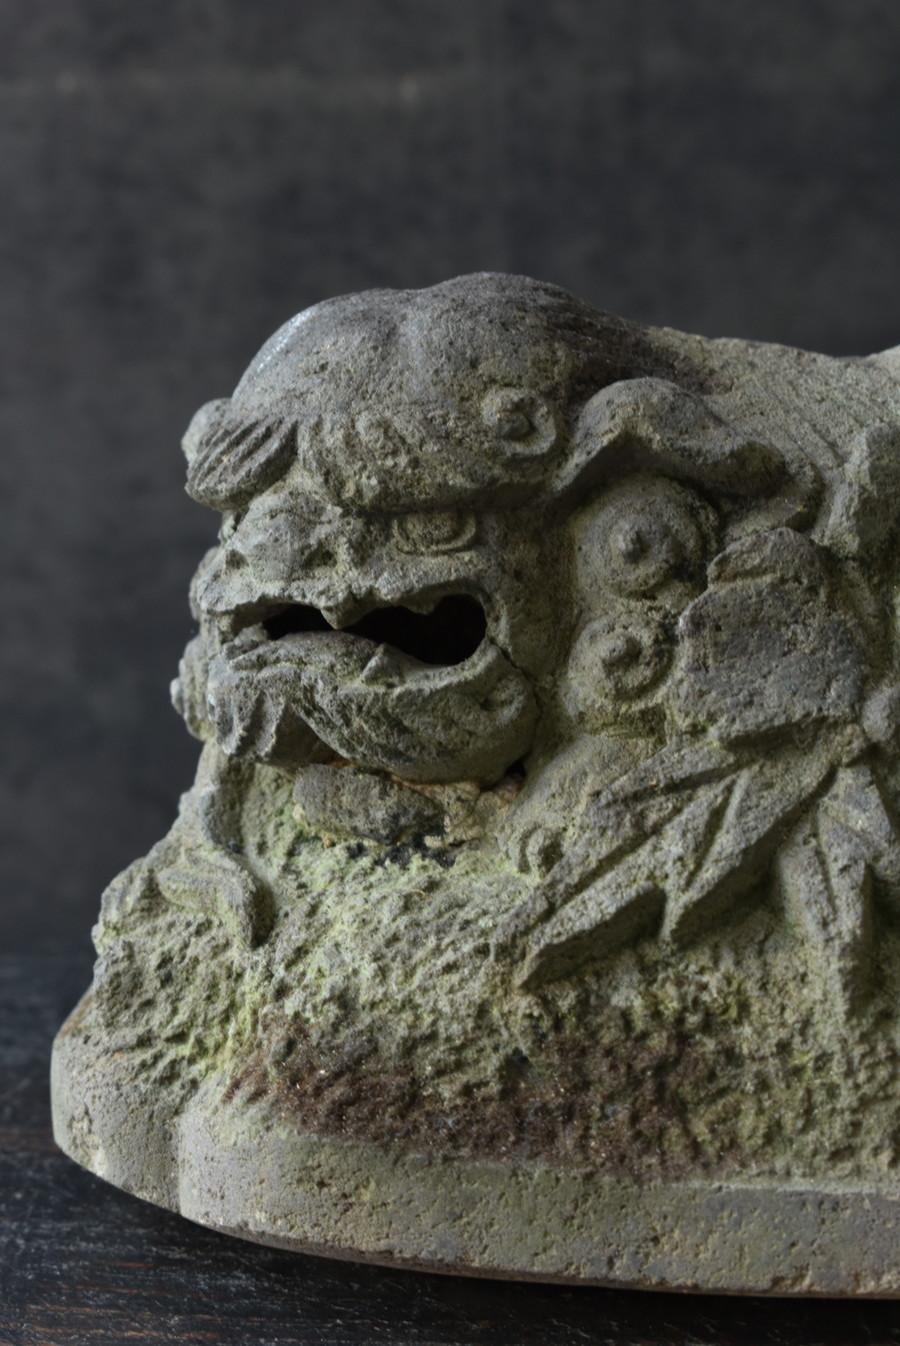 Dies ist eine steinerne Löwenfigur, die im späten 19. Jahrhundert in Japan zwischen der Edo-Periode und der Meiji-Periode hergestellt wurde.

Der Shishi wird in Japan seit der Antike als göttliches Tier verehrt und erfreut sich auch heute noch in